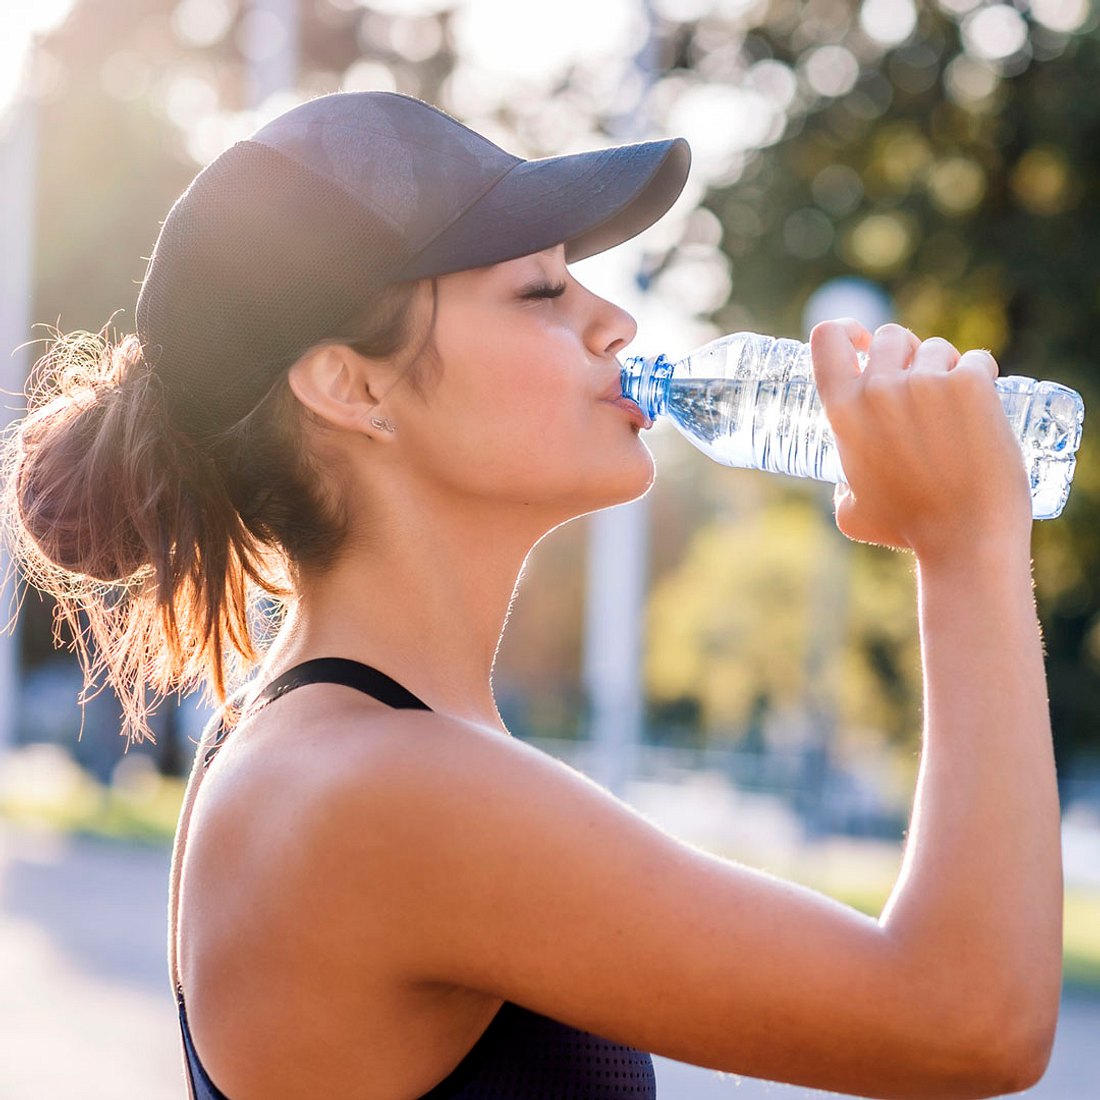 Zu viel Wasser trinken? So viel ist ungesund!